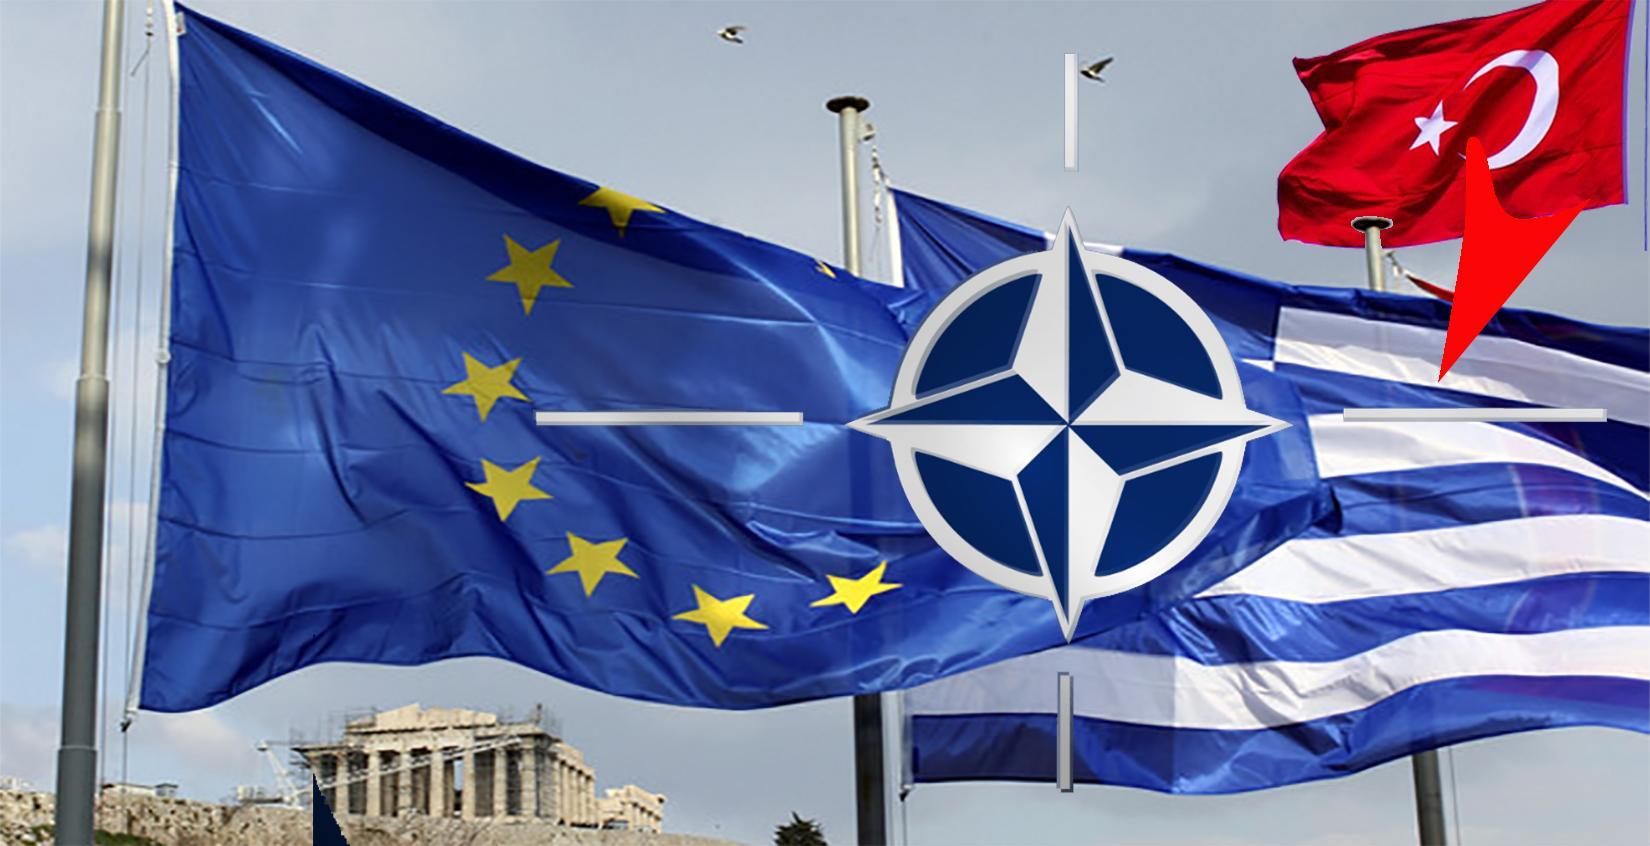 Η γεωπολιτική θέση της Ελλάδας και η σημασία της για το ΝΑΤΟ